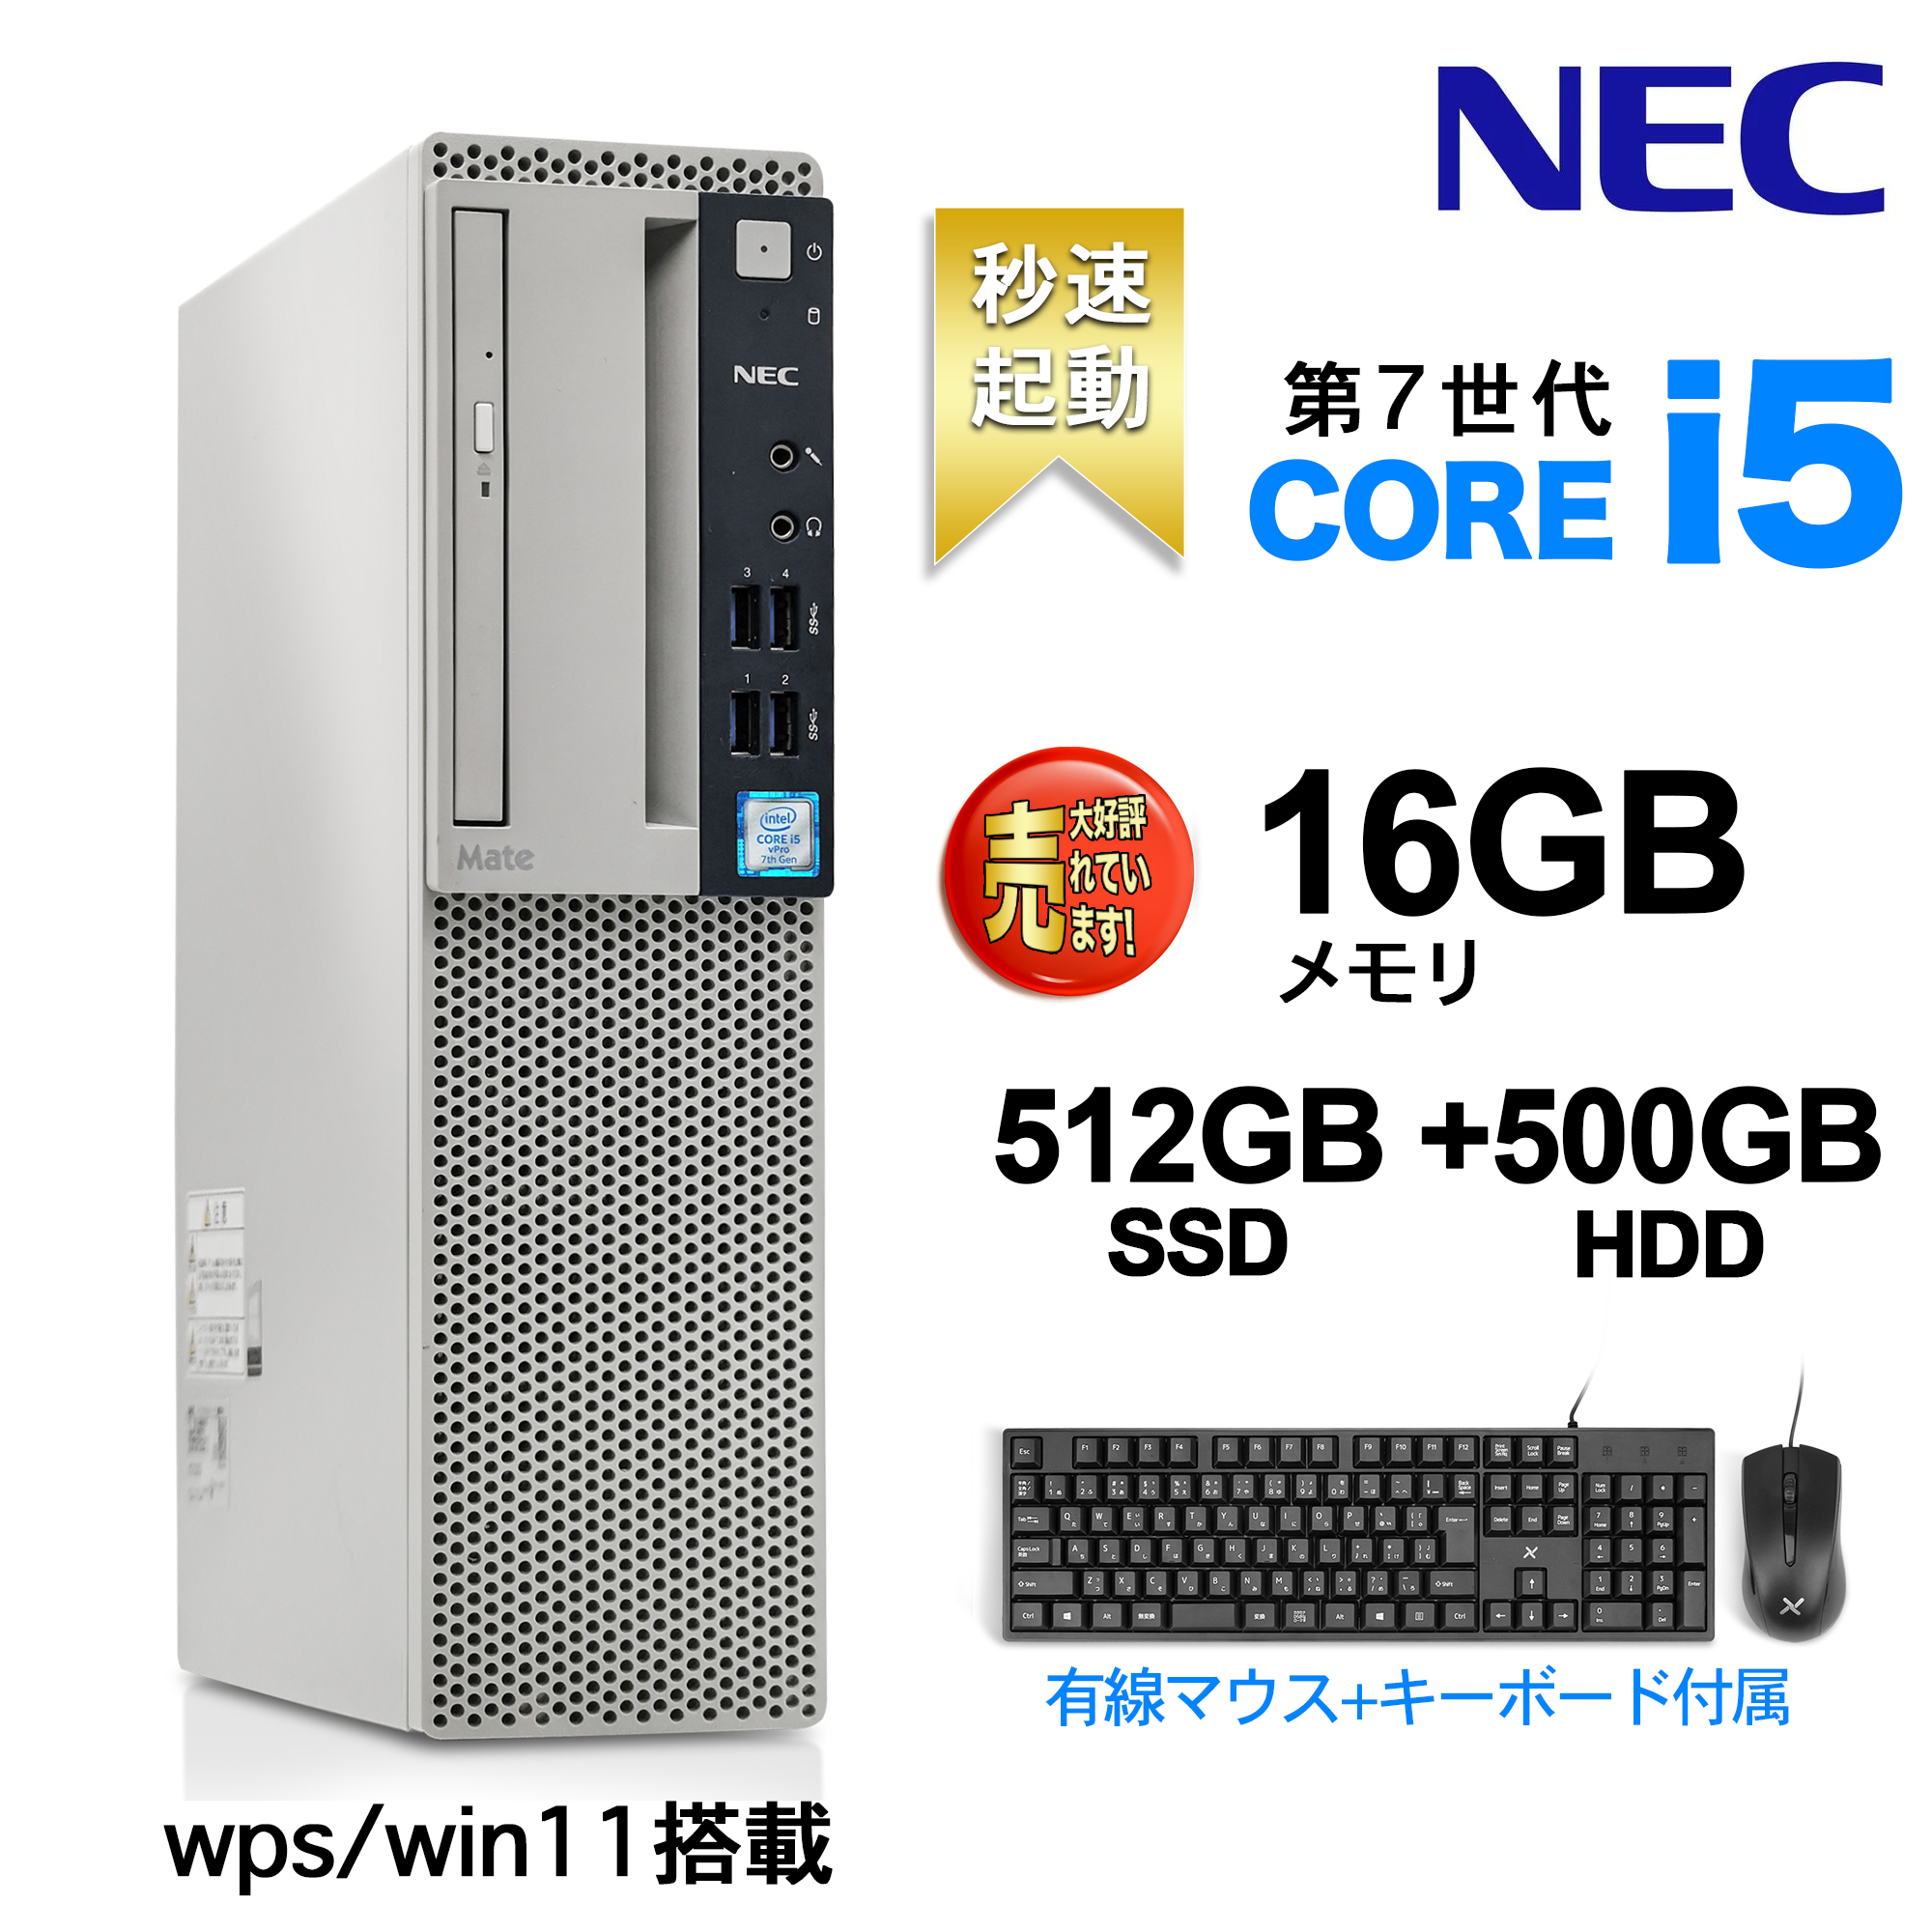 デスクトップパソコン MS WPS付き Win 11搭載 NEC 国産大手メーカー 7500シリーズ 高性能第7世代 Core i5 4コア 3.4GHz 無線LAN DVDドライブ HDMI USB3.0 KINGSOFTカード 有線キーボードとマウス付属 Desktop デスクトップパソコン デスクトップPC16GB 512GB  HDD:500GB